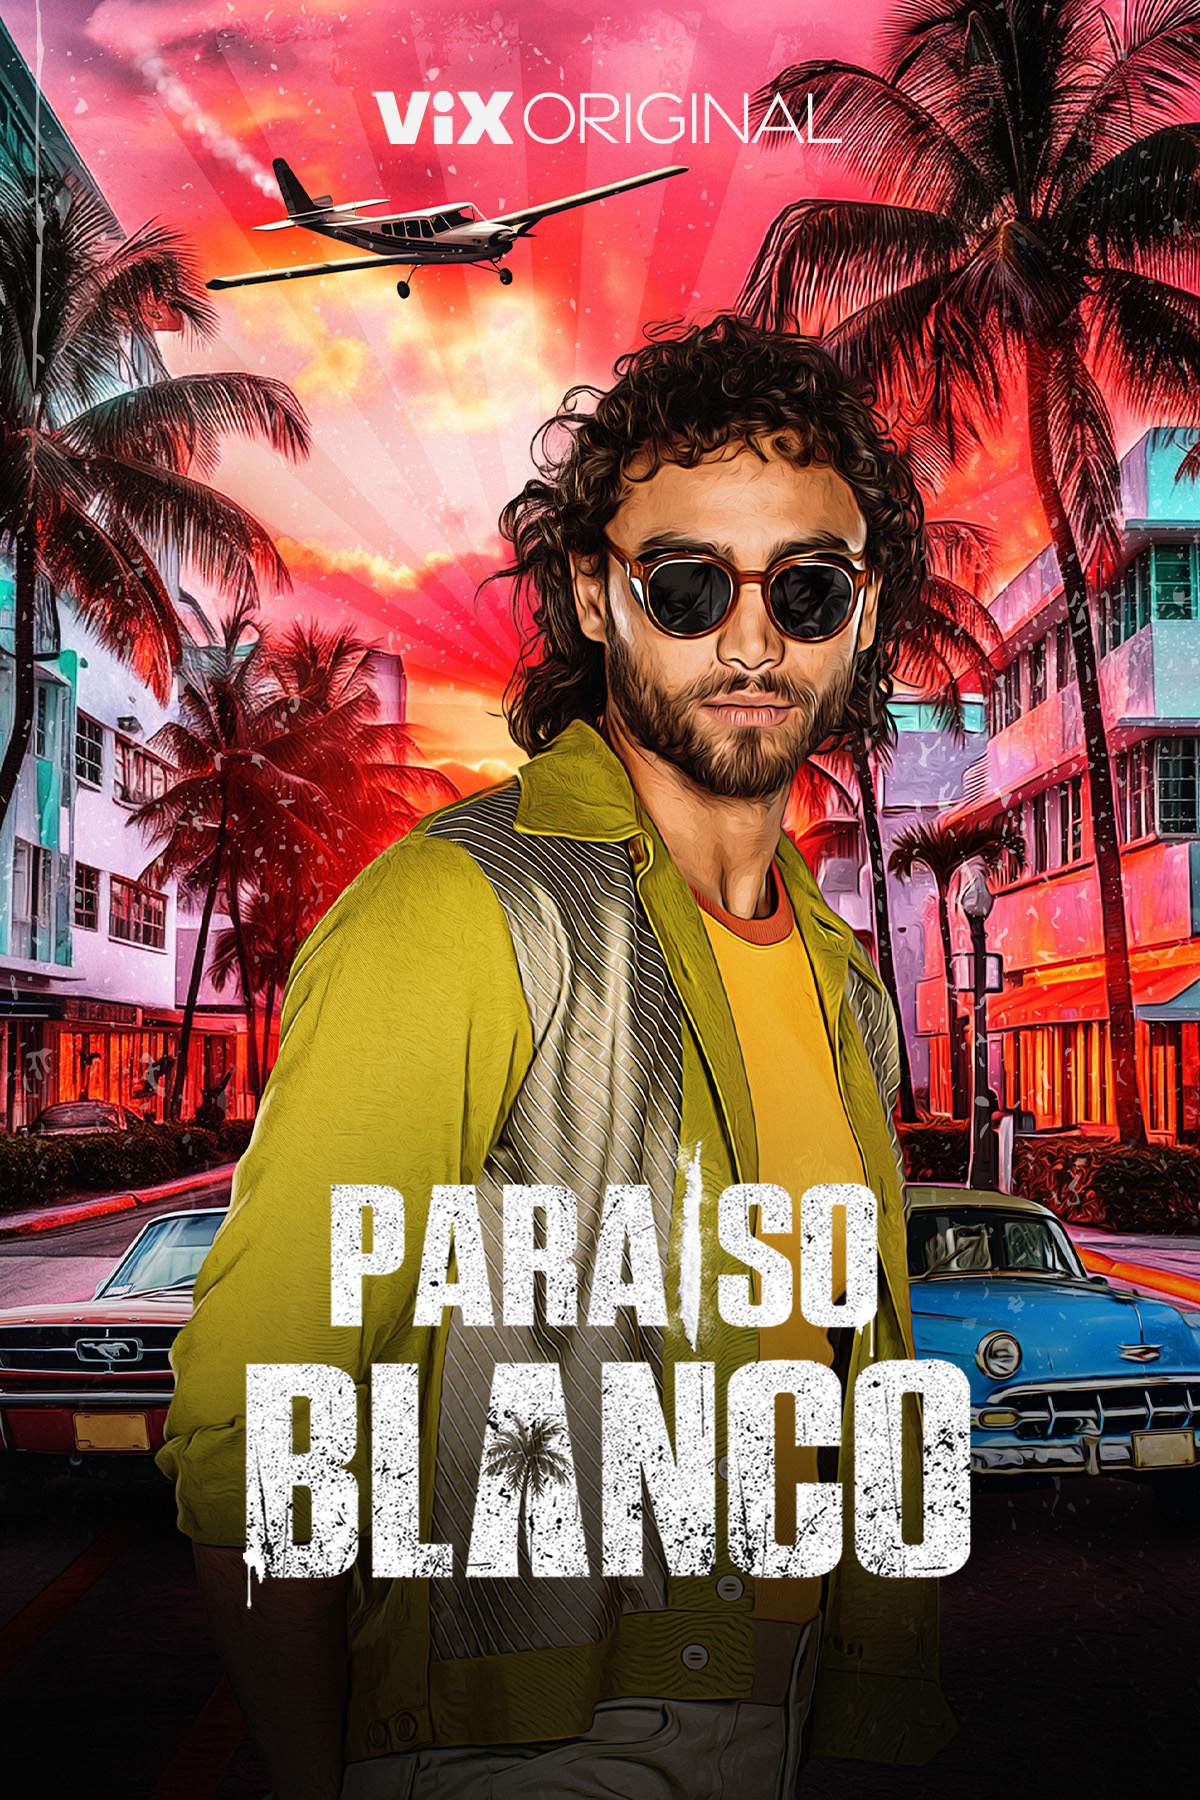 PARAÍSO BLANCO, Series Based on Carlos Lehder, Premieres July 20 ...